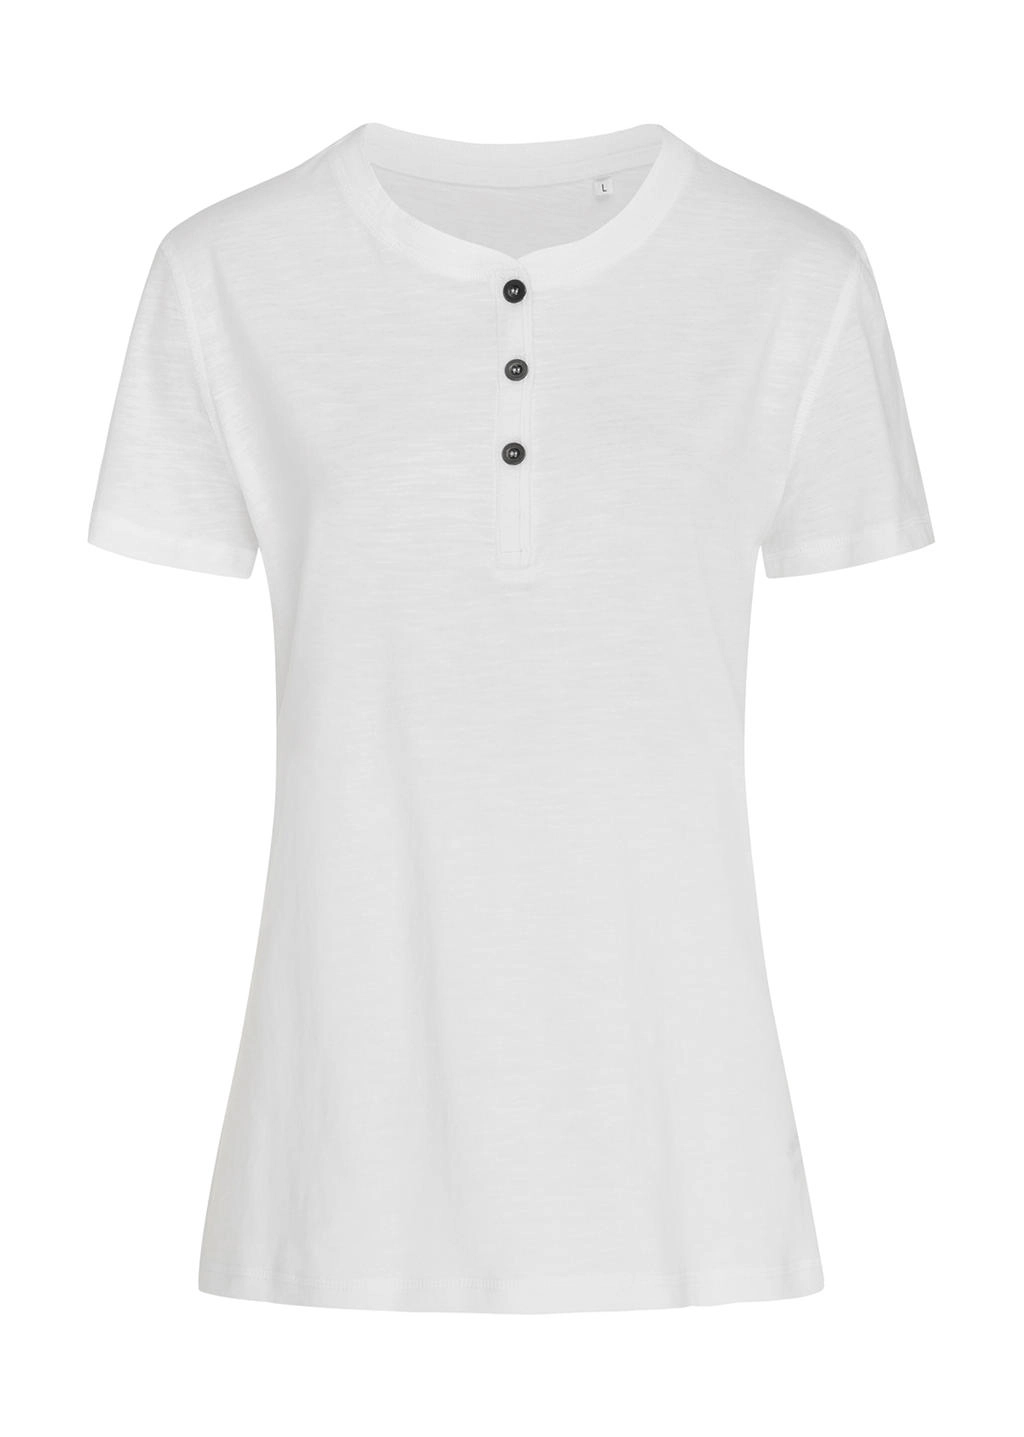 Sharon Henley T-Shirt zum Besticken und Bedrucken in der Farbe White mit Ihren Logo, Schriftzug oder Motiv.